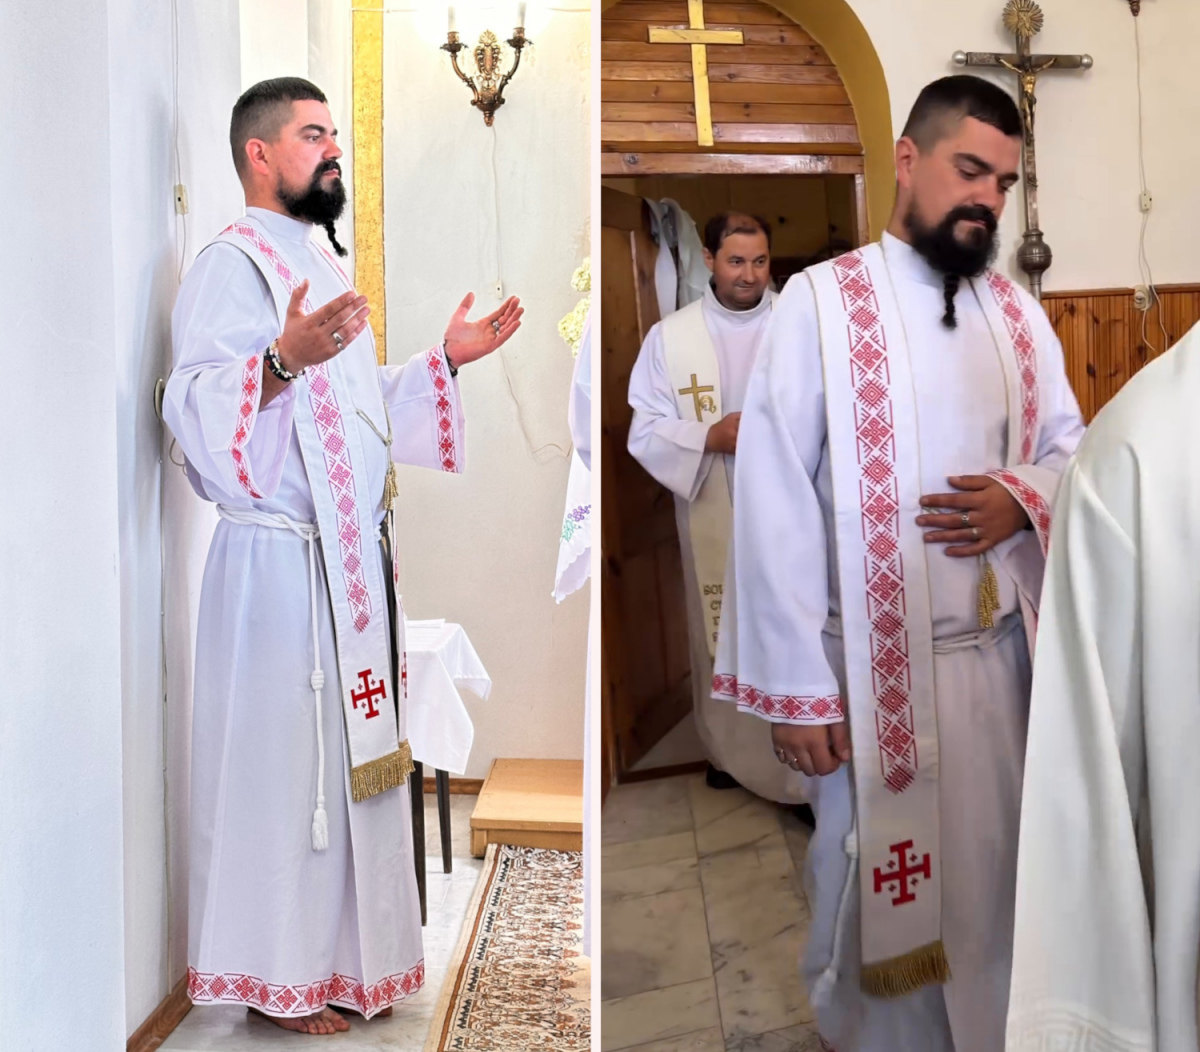 Праздничный дресс-код с вышиванкой показал беларусский священник